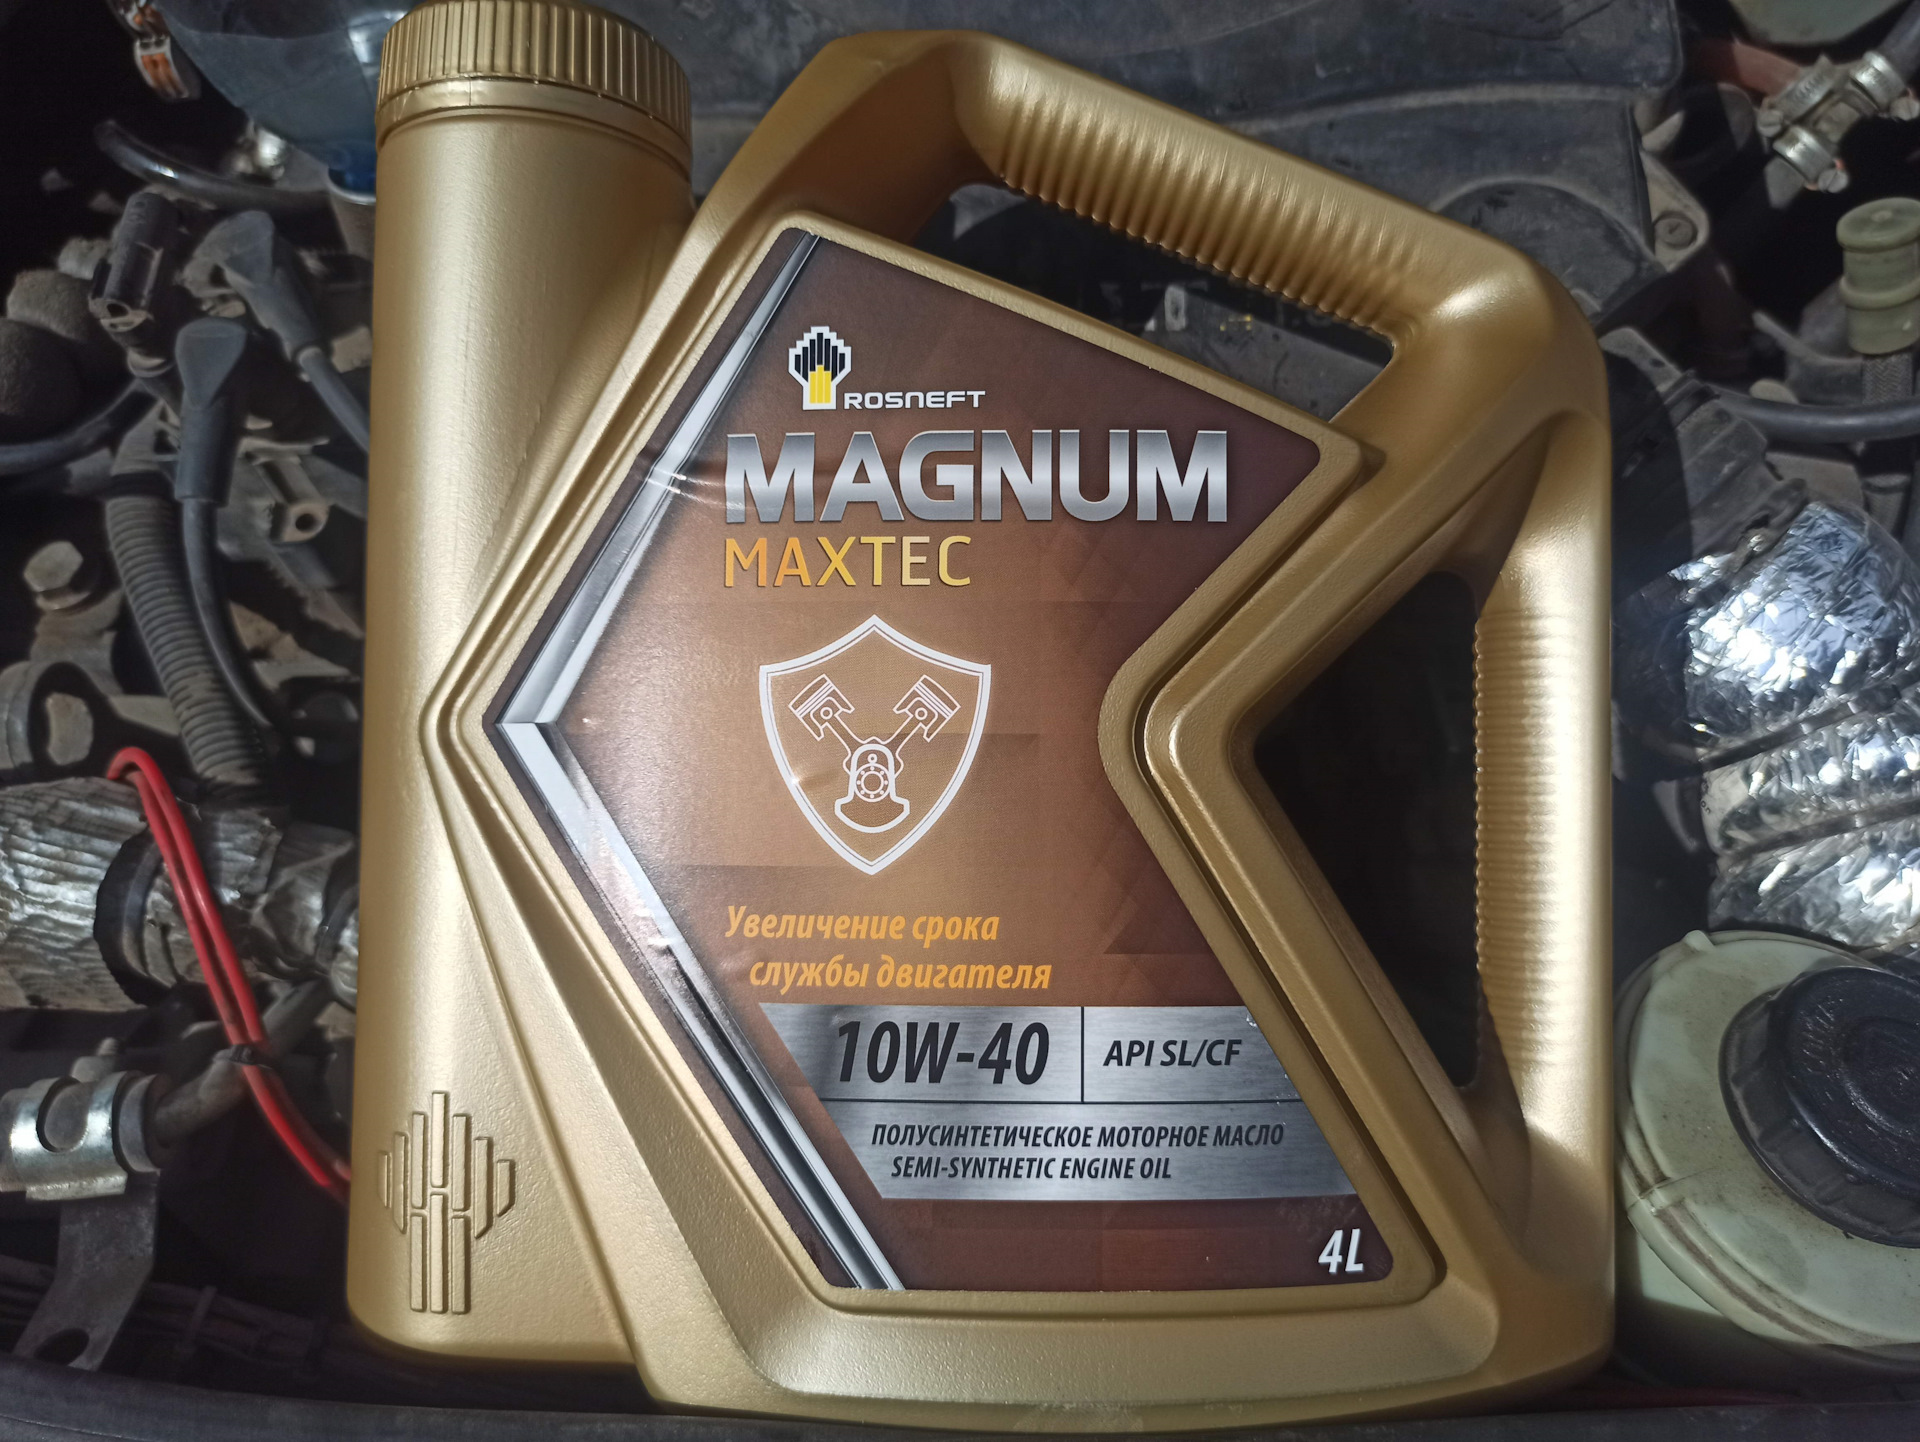 Rosneft Magnum Maxtec 10w-40. Масло Магнум для 1zz. Роснефть Магнум 5х50. МП 300 масло ДВС 5 В 40. Масло роснефть макстек